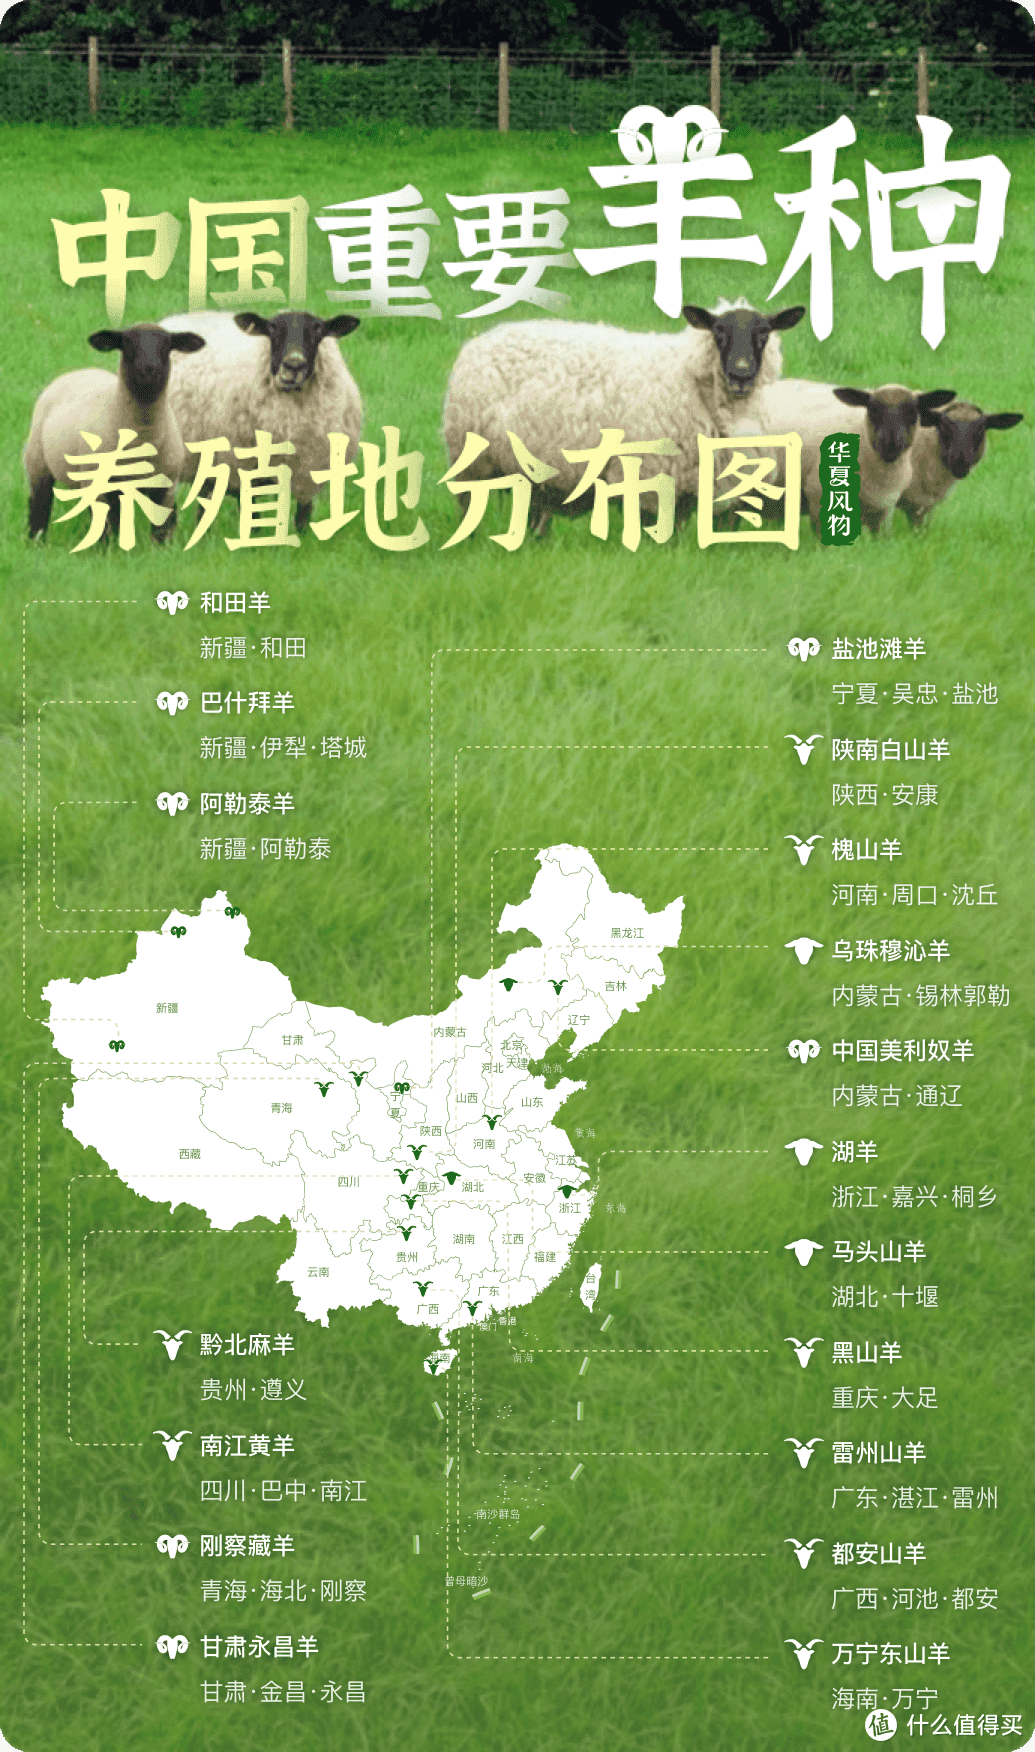 中国重要羊种养殖地分布图 ©华夏风物